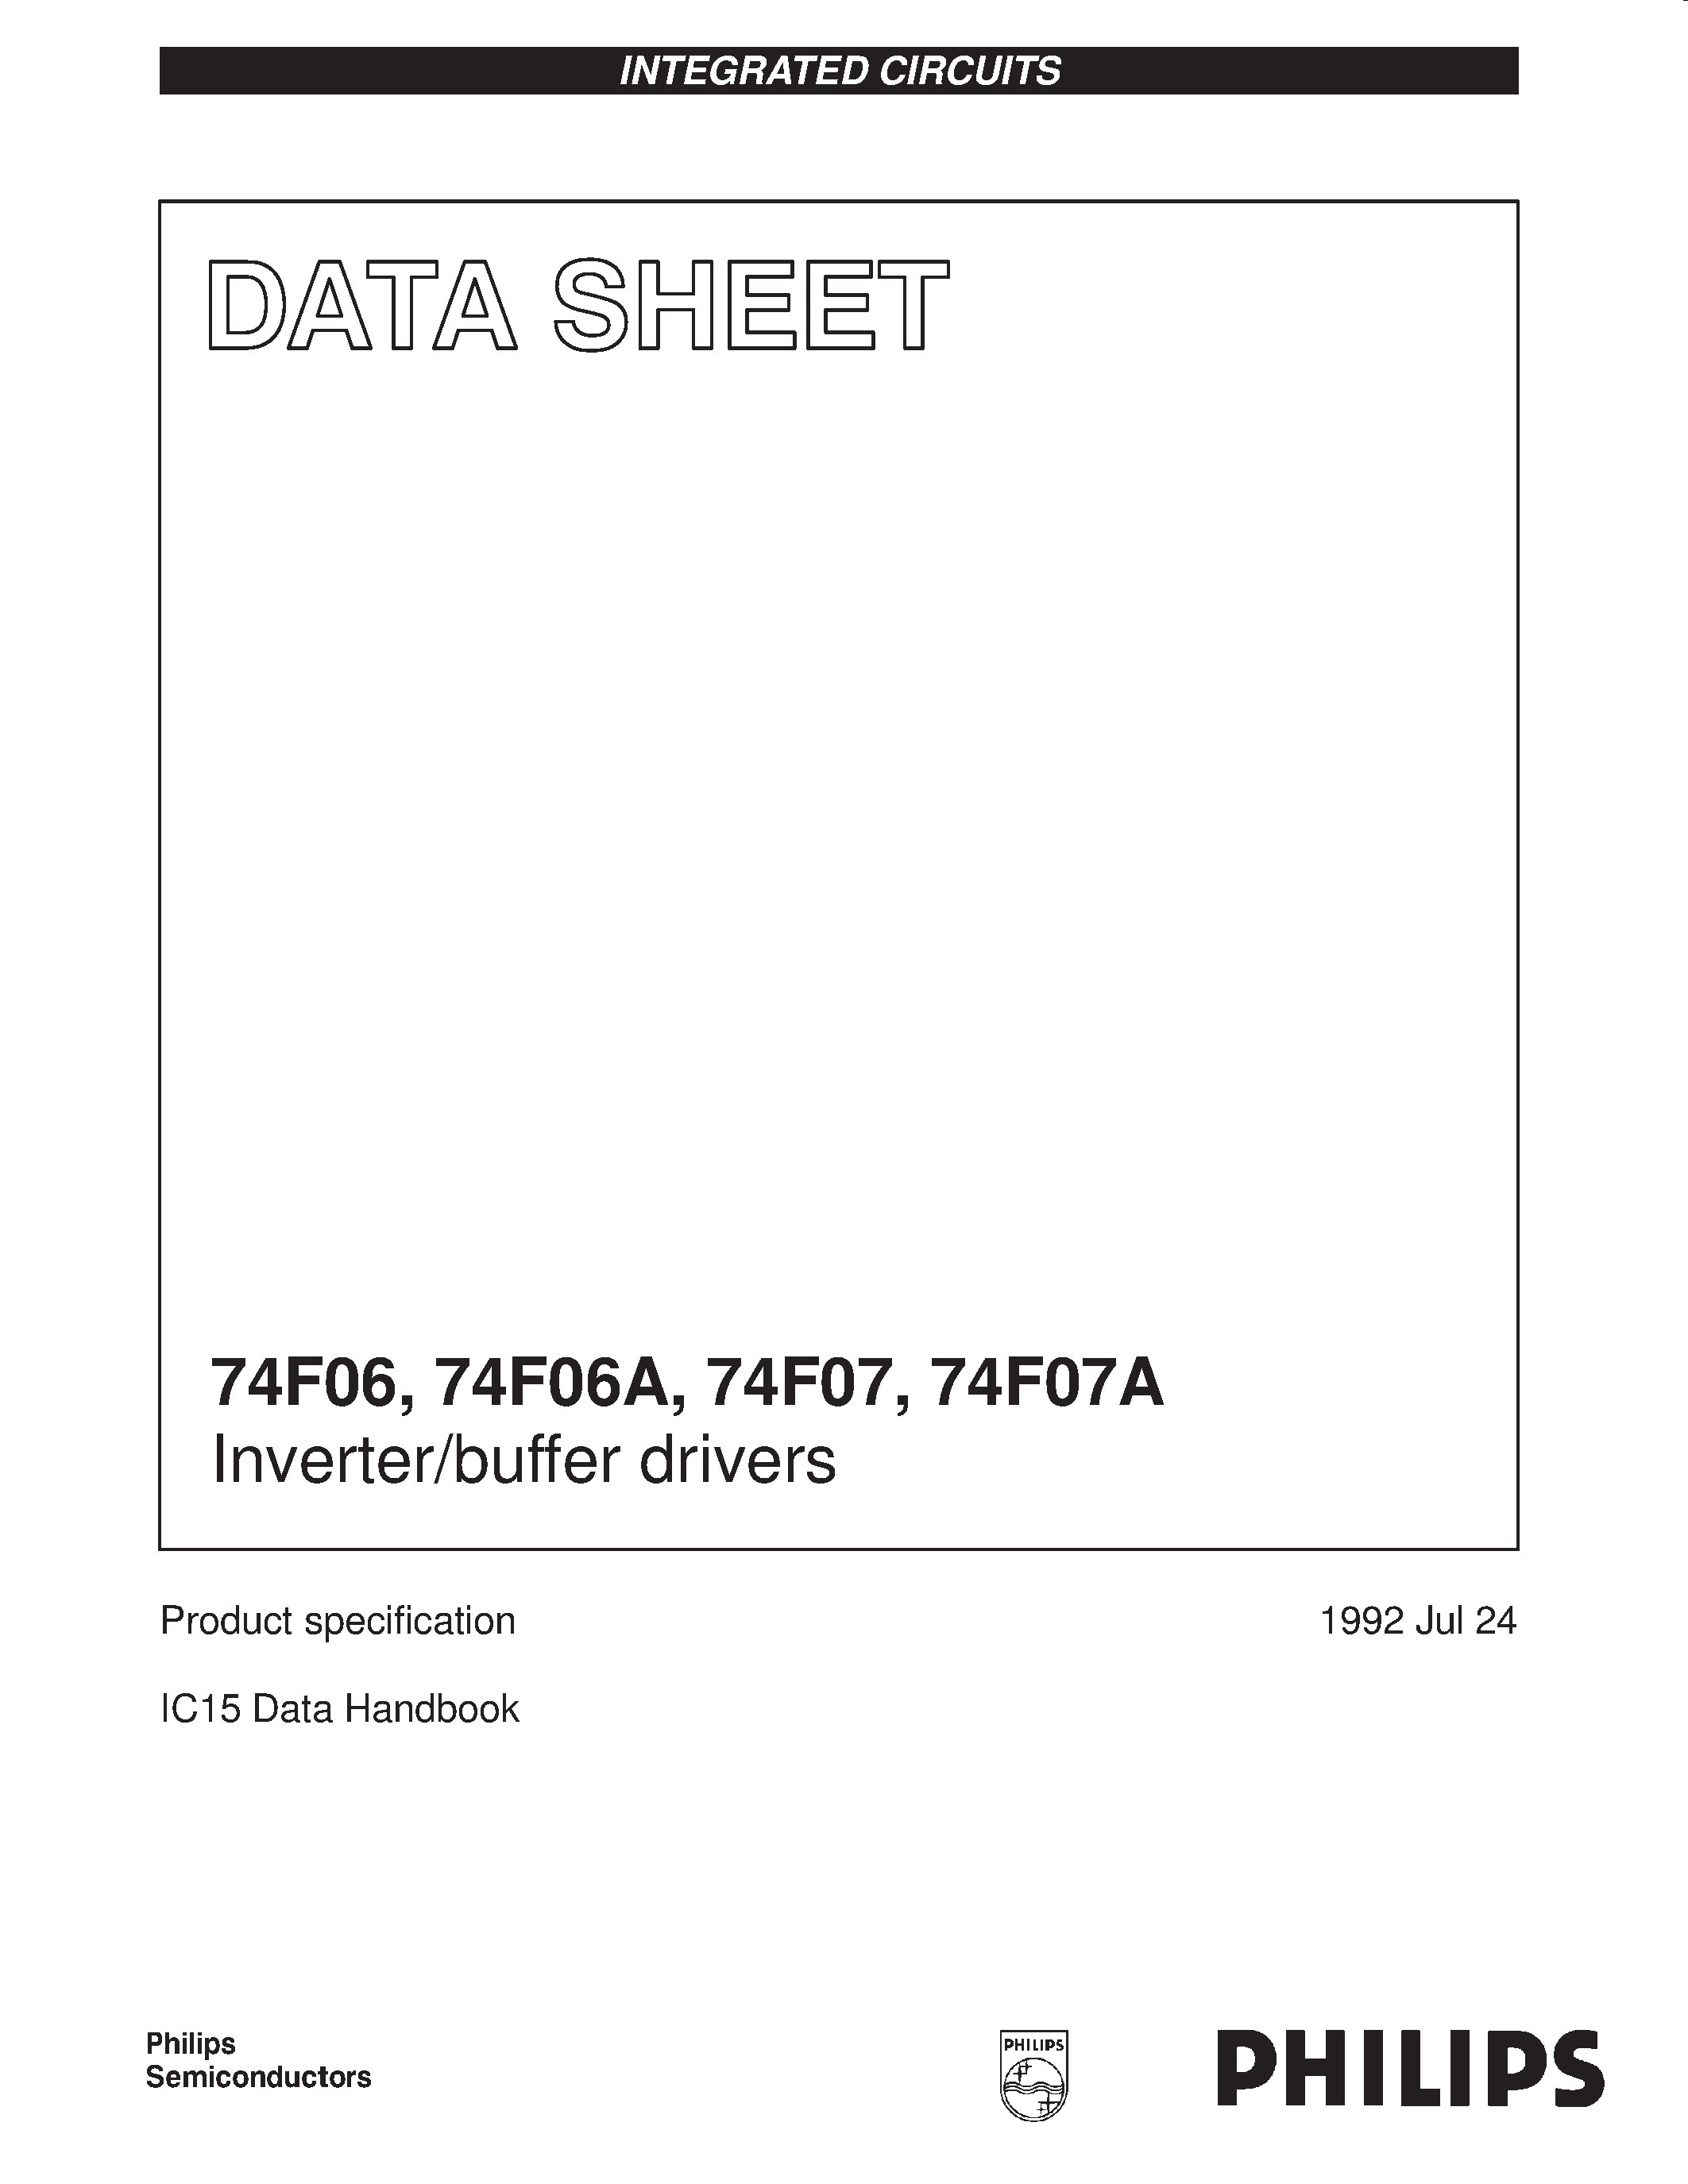 Даташит 74F07 - Inverter/buffer drivers страница 1